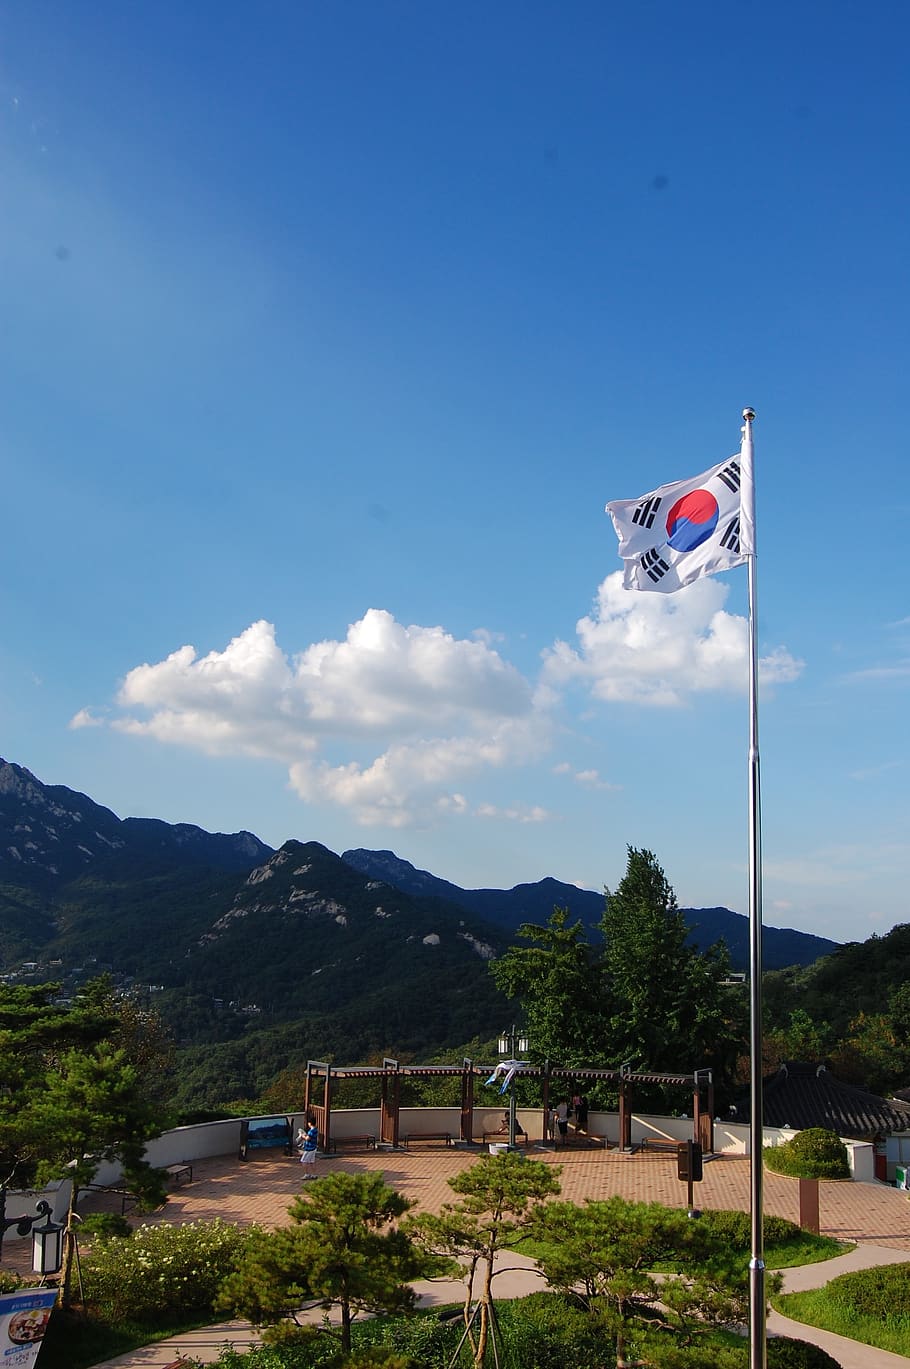 palgakjeong, seul, julia roberts, montanha bukhansan, montanha, céu, patriotismo, bandeira, meio ambiente, nuvem - céu